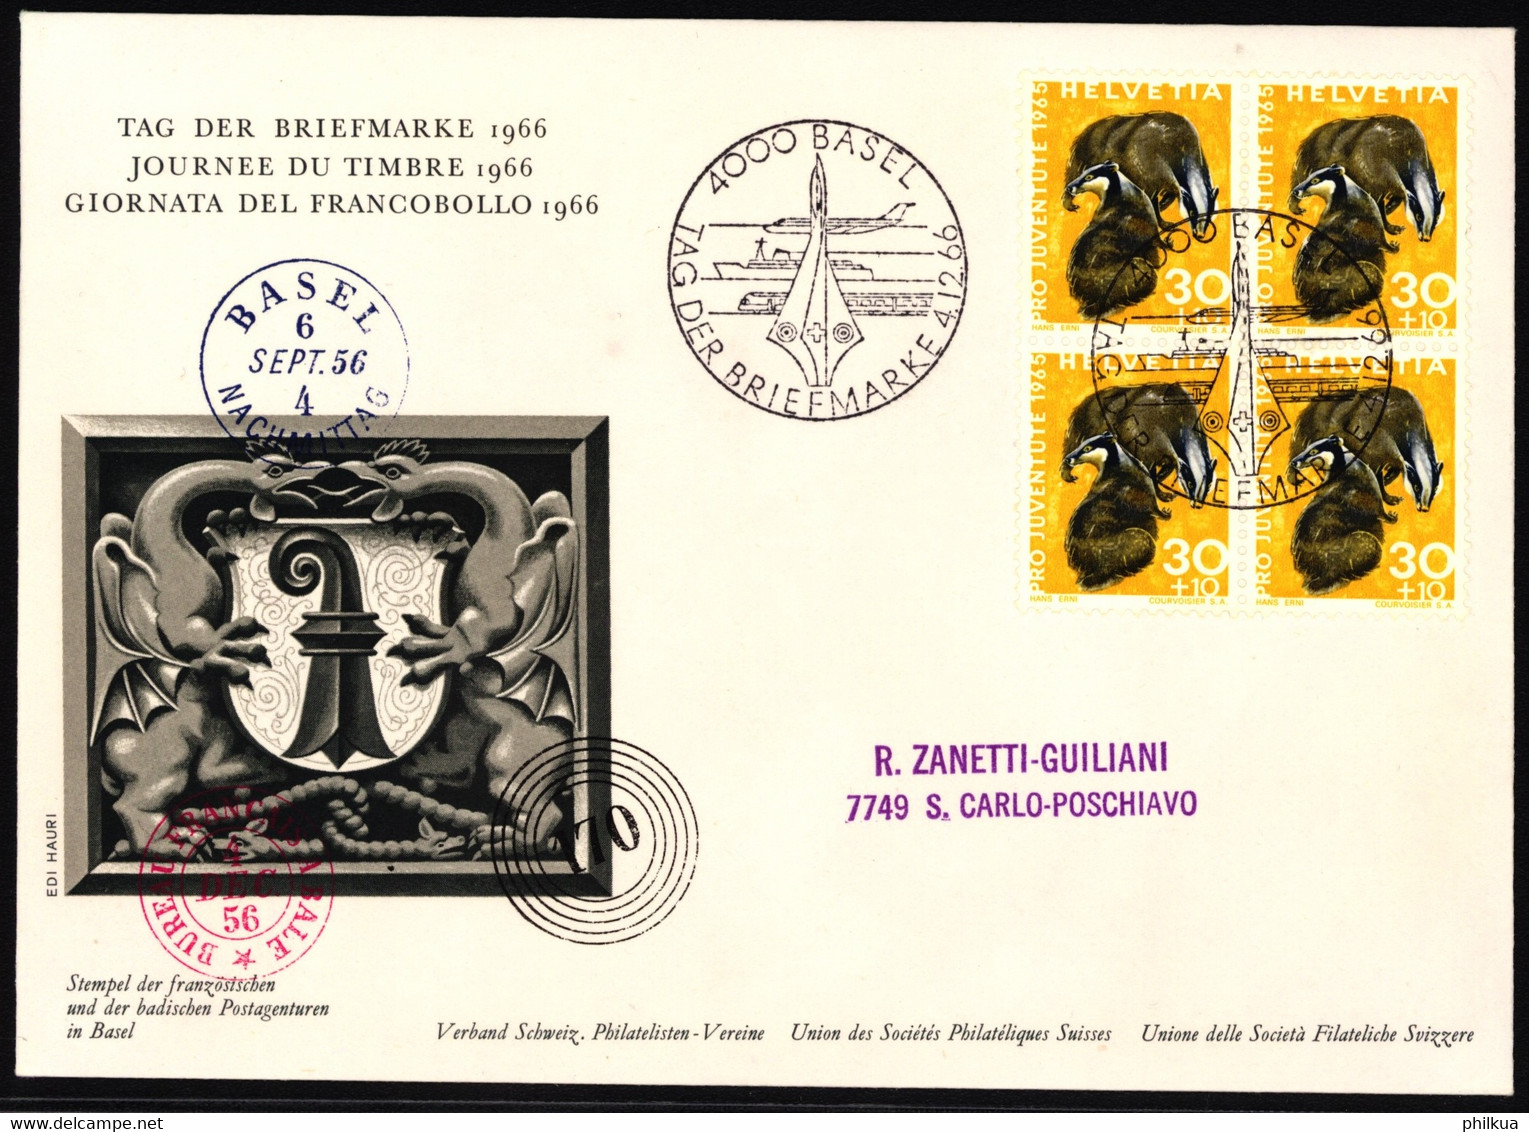 J213 Dachs Auf Ofiziellem Sonderumschalg "Tag Der Briefmarke" Mit Stempel Tag Der Briefmarke 1966 - BASEL - Giornata Del Francobollo